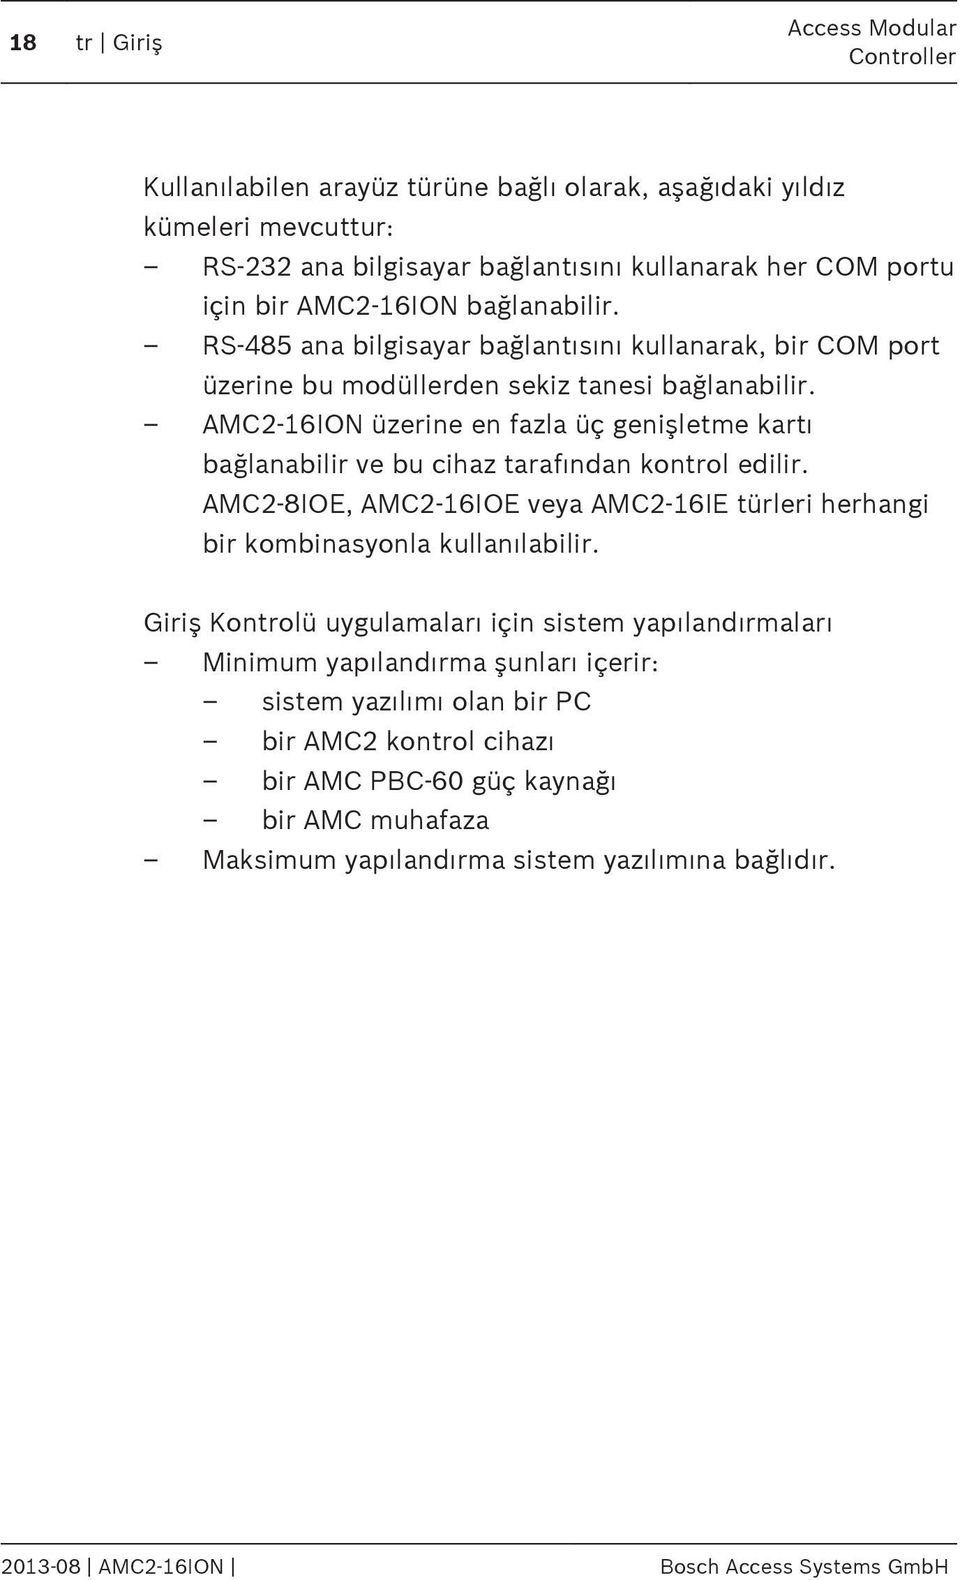 AMC2-16ION üzerine en fazla üç genişletme kartı bağlanabilir ve bu cihaz tarafından kontrol edilir. AMC2-8IOE, AMC2-16IOE veya AMC2-16IE türleri herhangi bir kombinasyonla kullanılabilir.